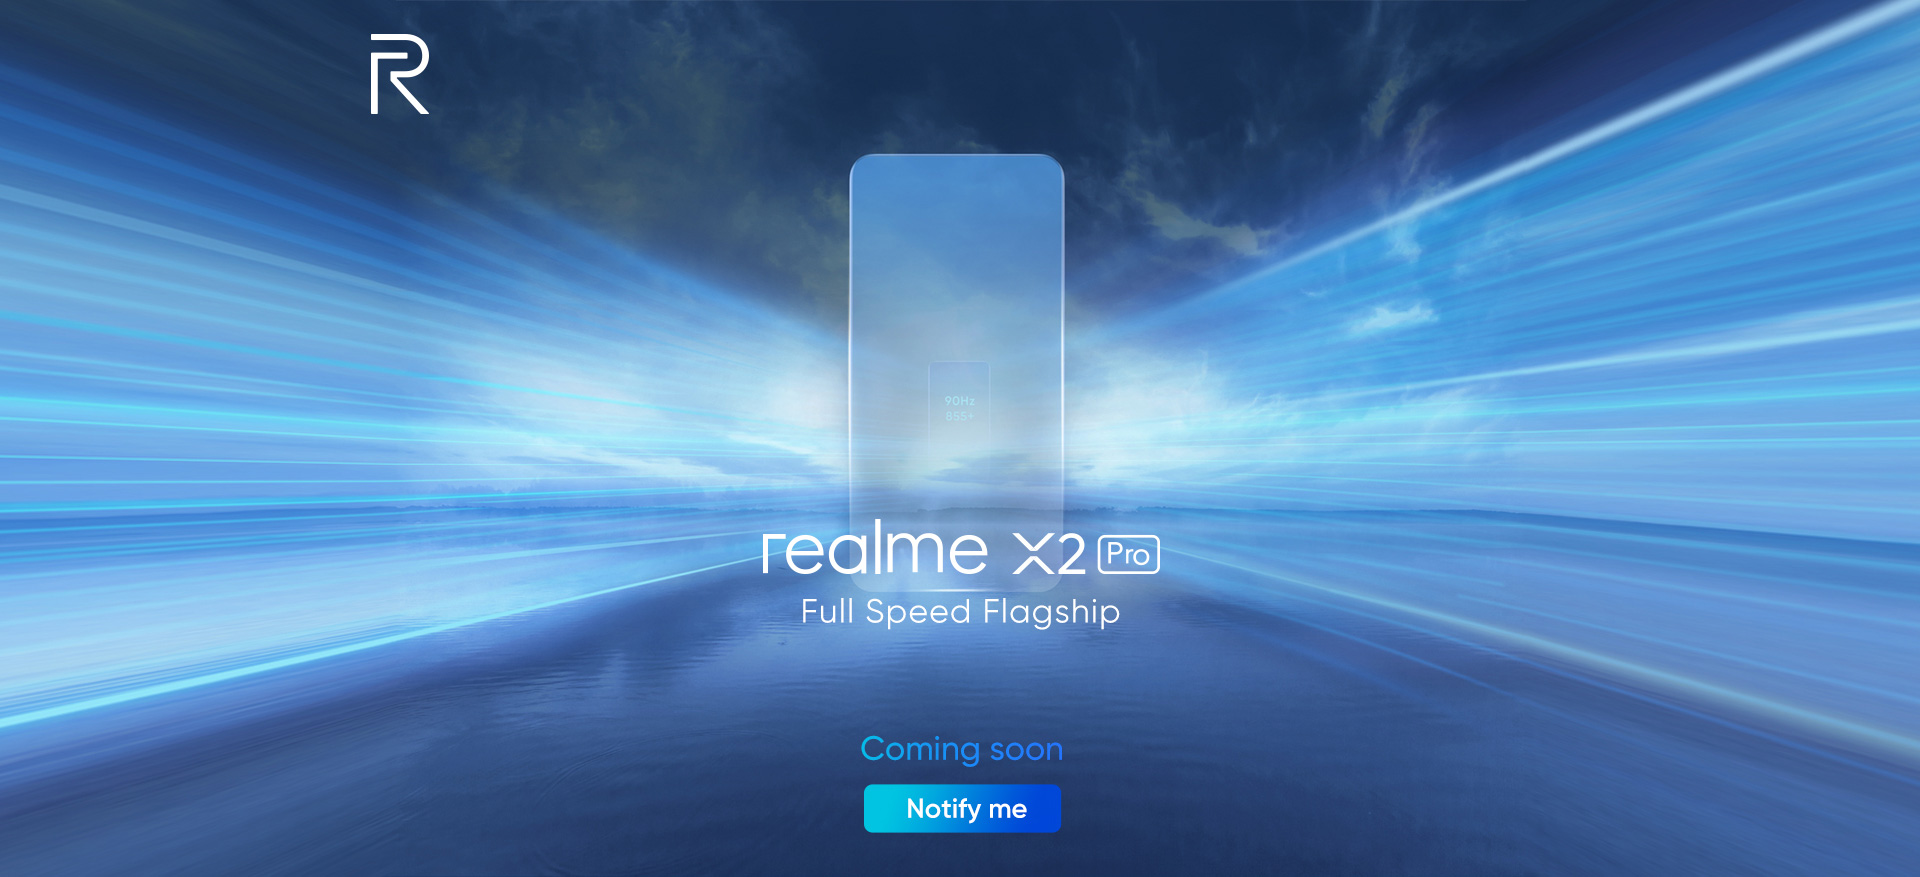 Realme X2 Pro rumor roundup